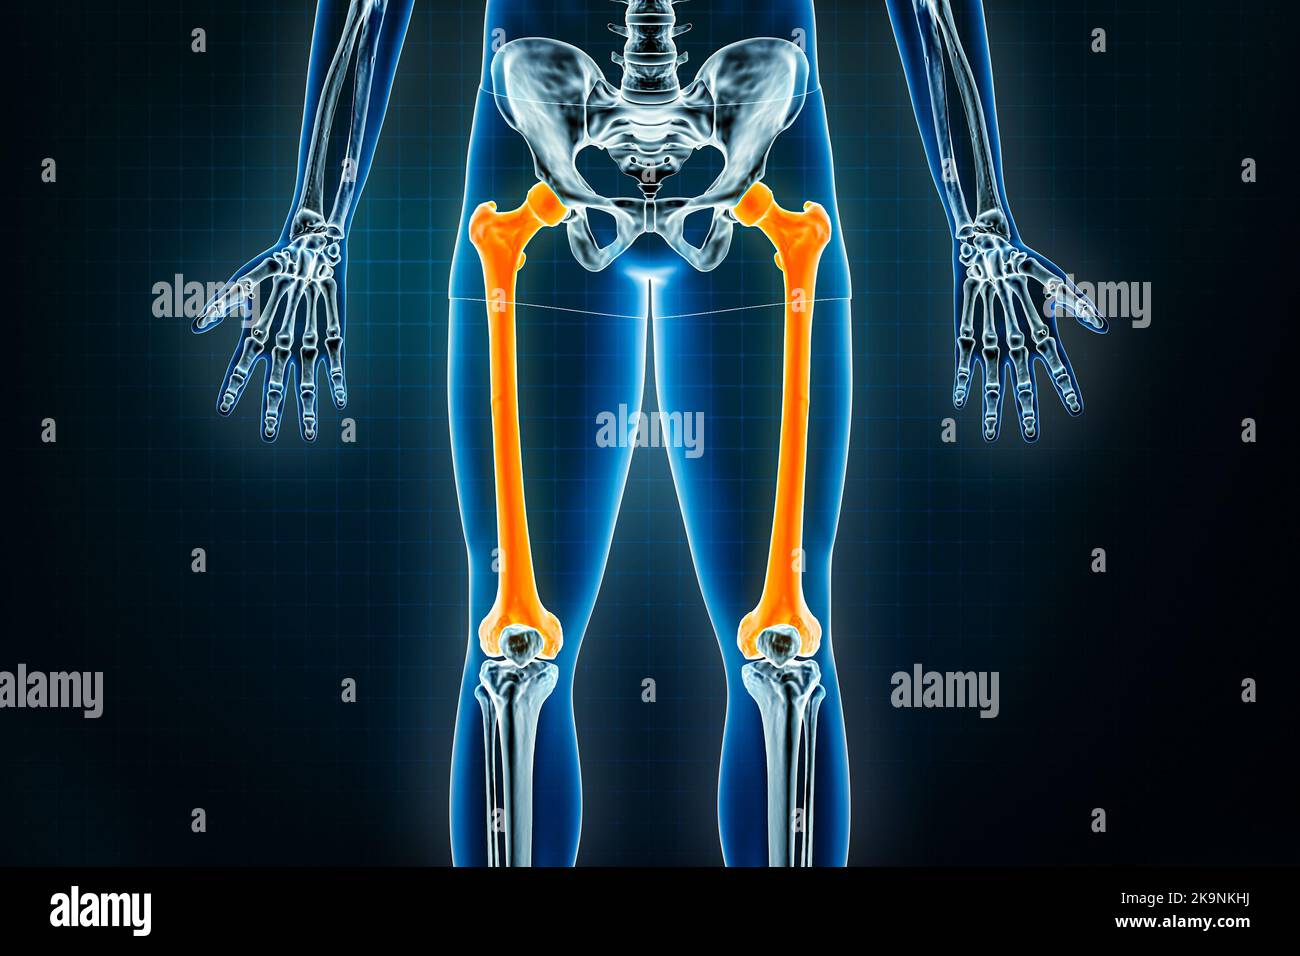 Femur- oder Oberschenkelknochen-Röntgenaufnahme vorne oder anteriorer Ansicht. Osteologie des menschlichen Skeletts, Bein- oder Unterschenkelknochen 3D Darstellung. Anatomie, medizinisch Stockfoto